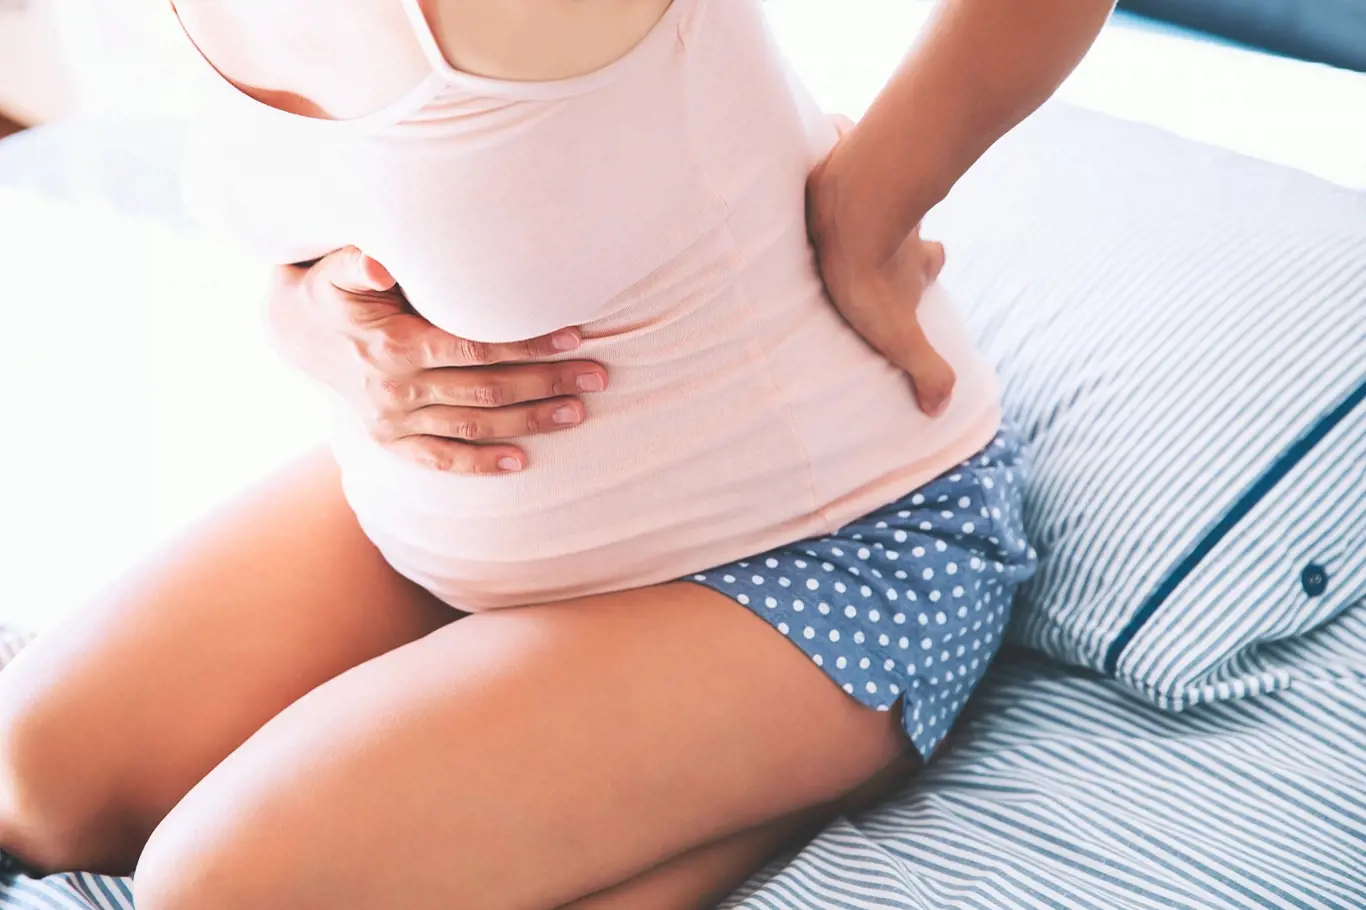 V období blížícímu se porodu dochází také k postupnému zvýšení elasticity vaziva, to usnadňuje porod, ale může způsobit bolestivost kloubů